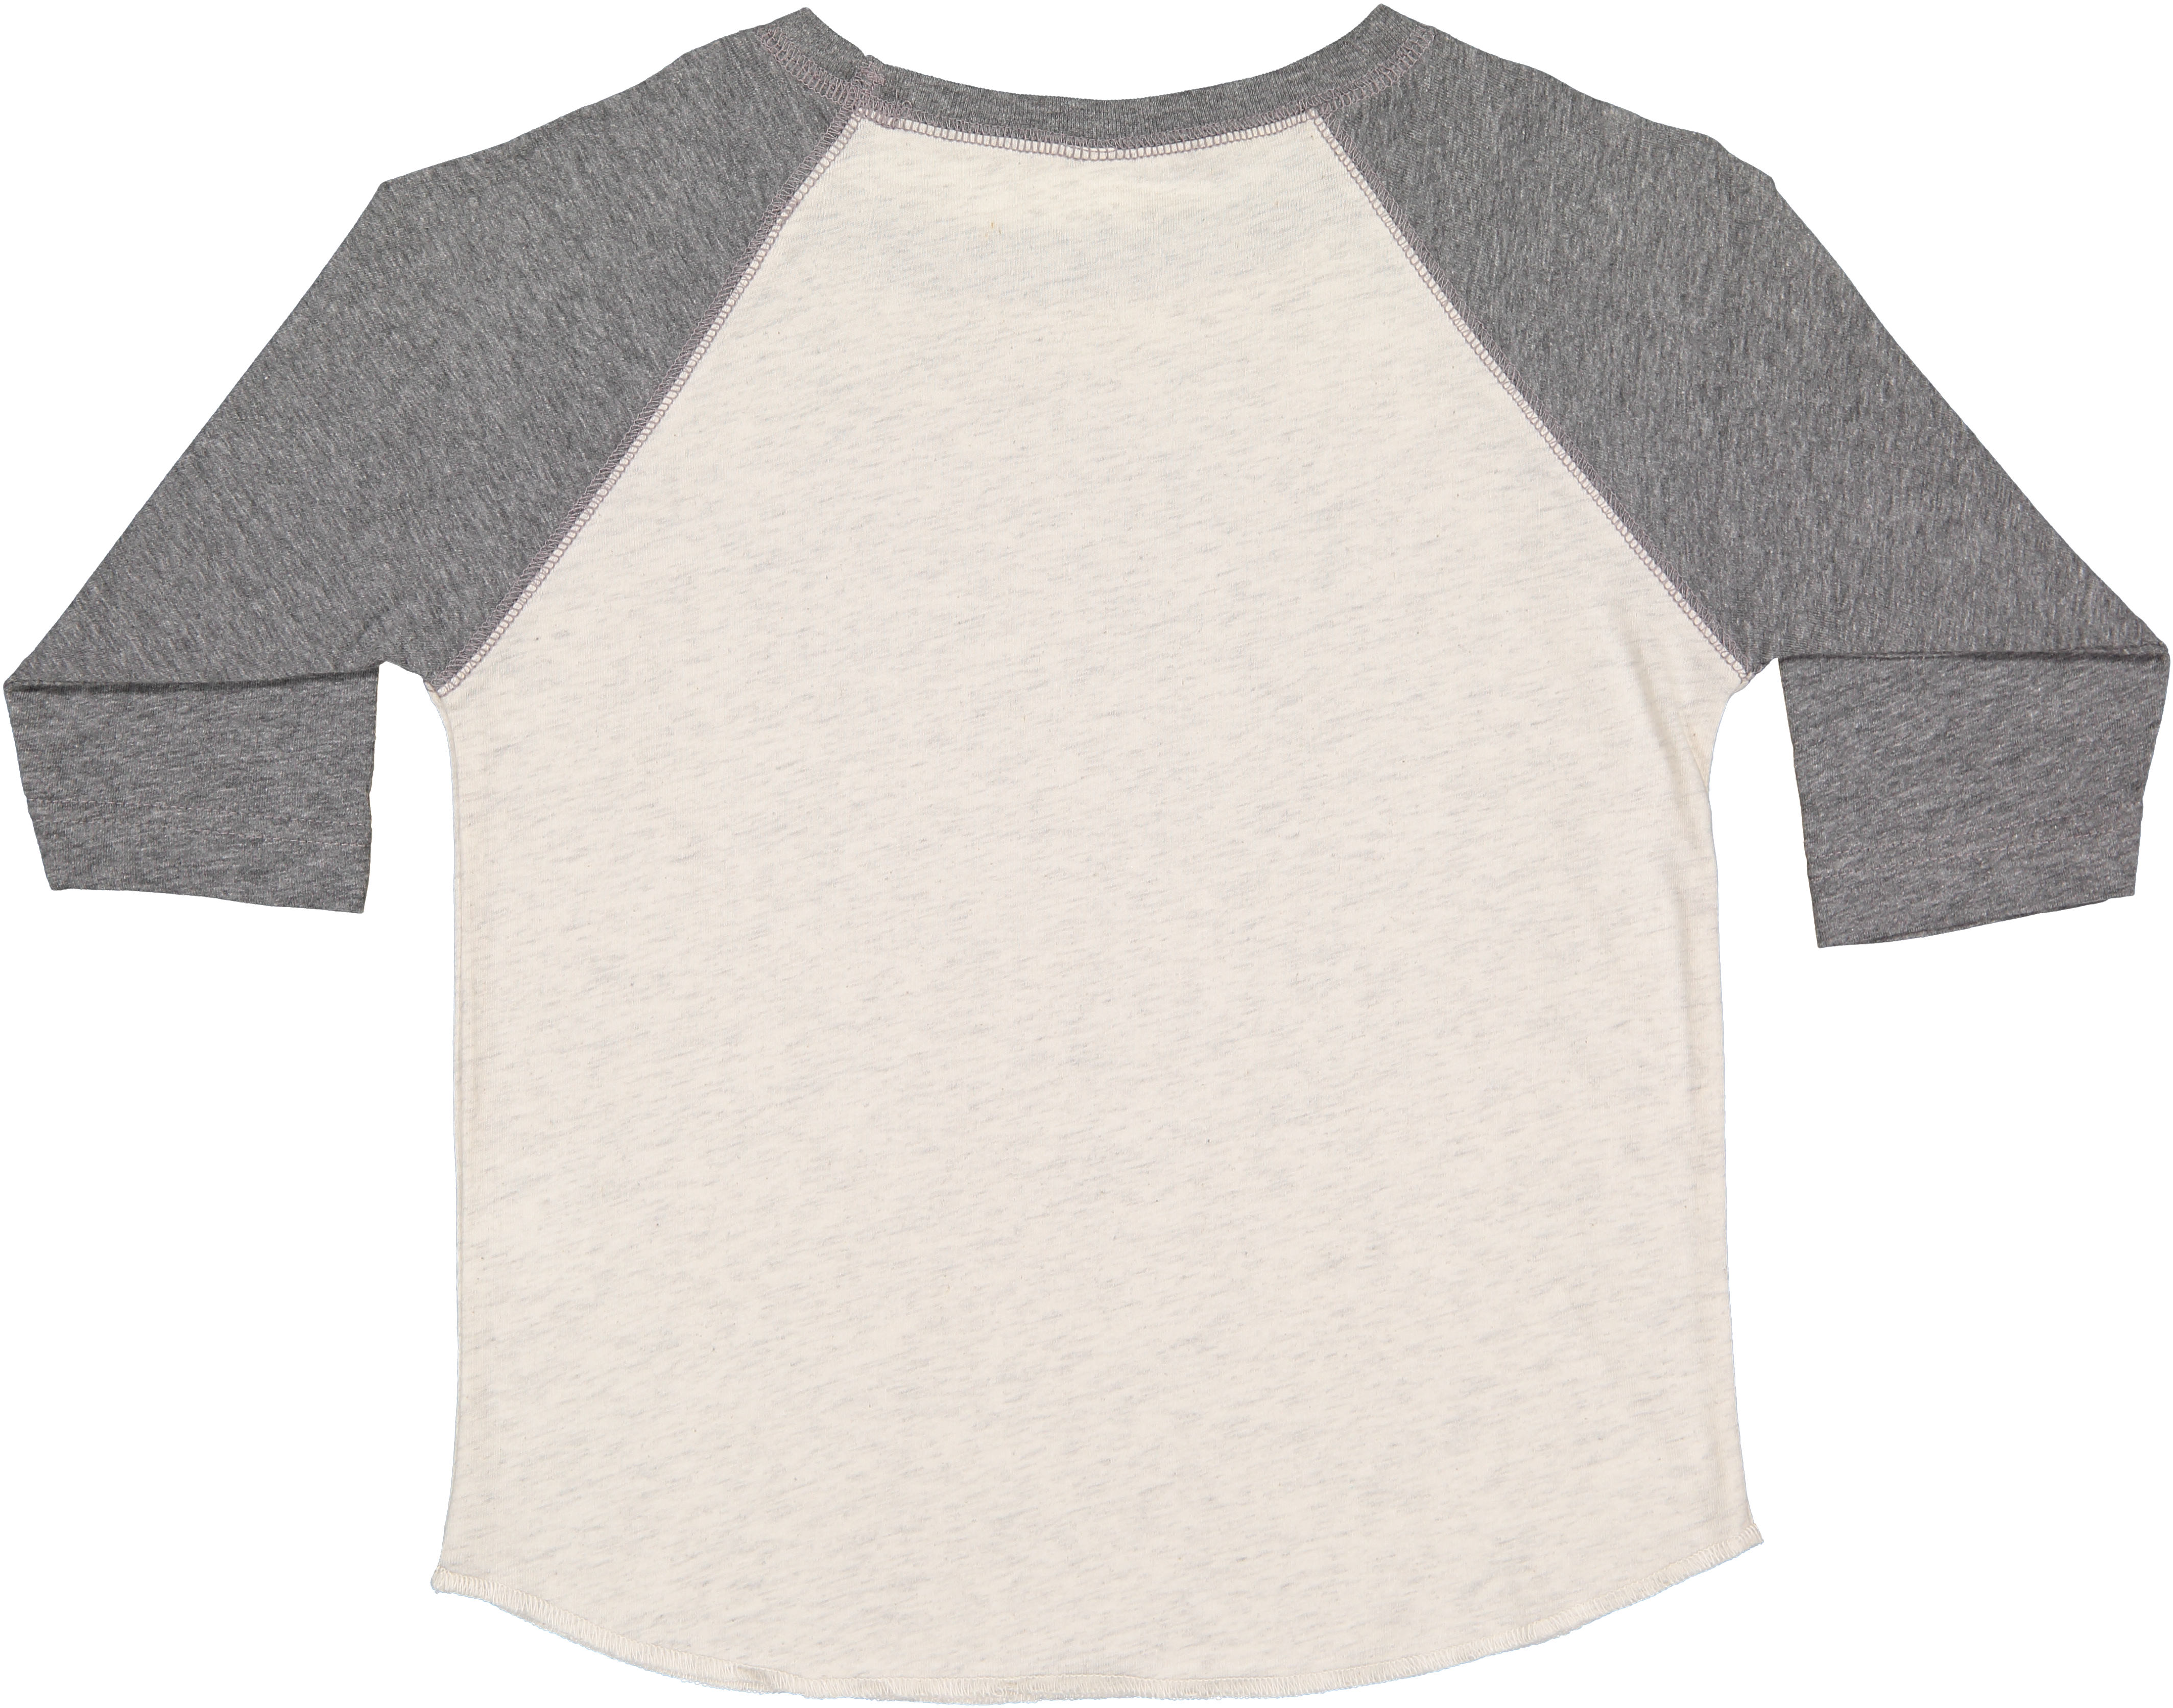 Toddler (Unisex) Raglan Baseball T-Shirt  (Natural Heather / Granite Heather)